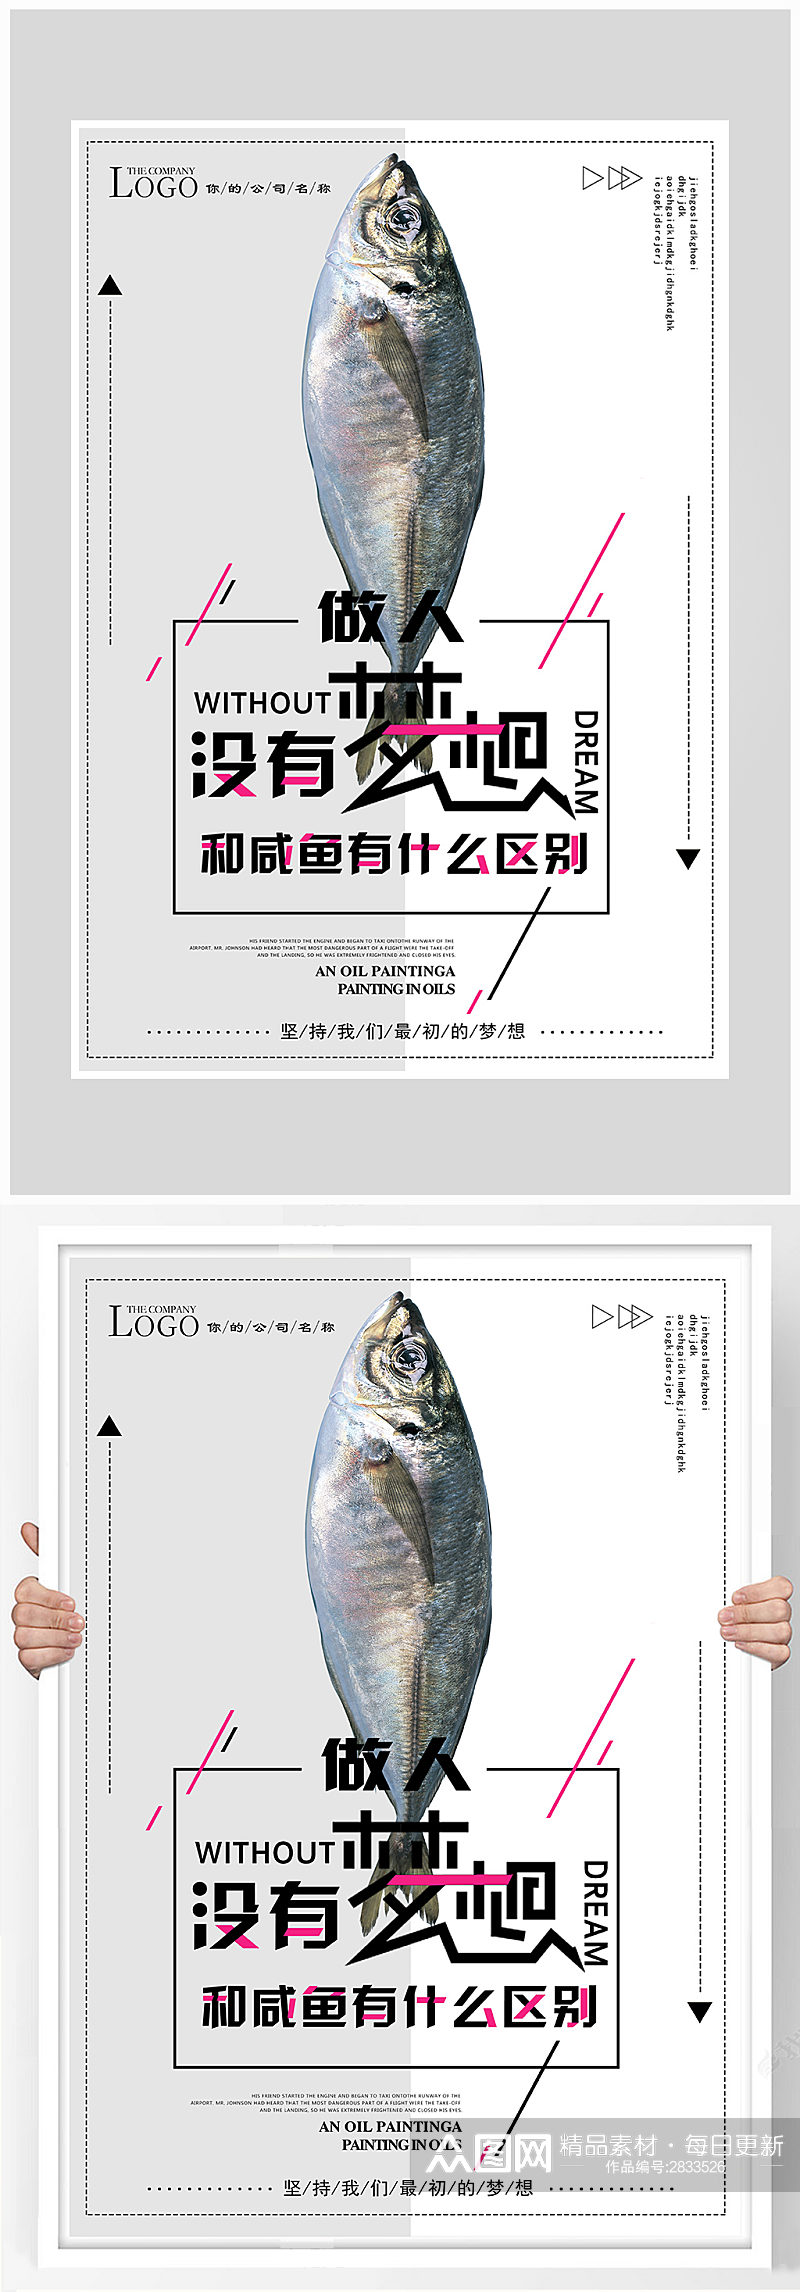 创意咸鱼梦想海报设计素材